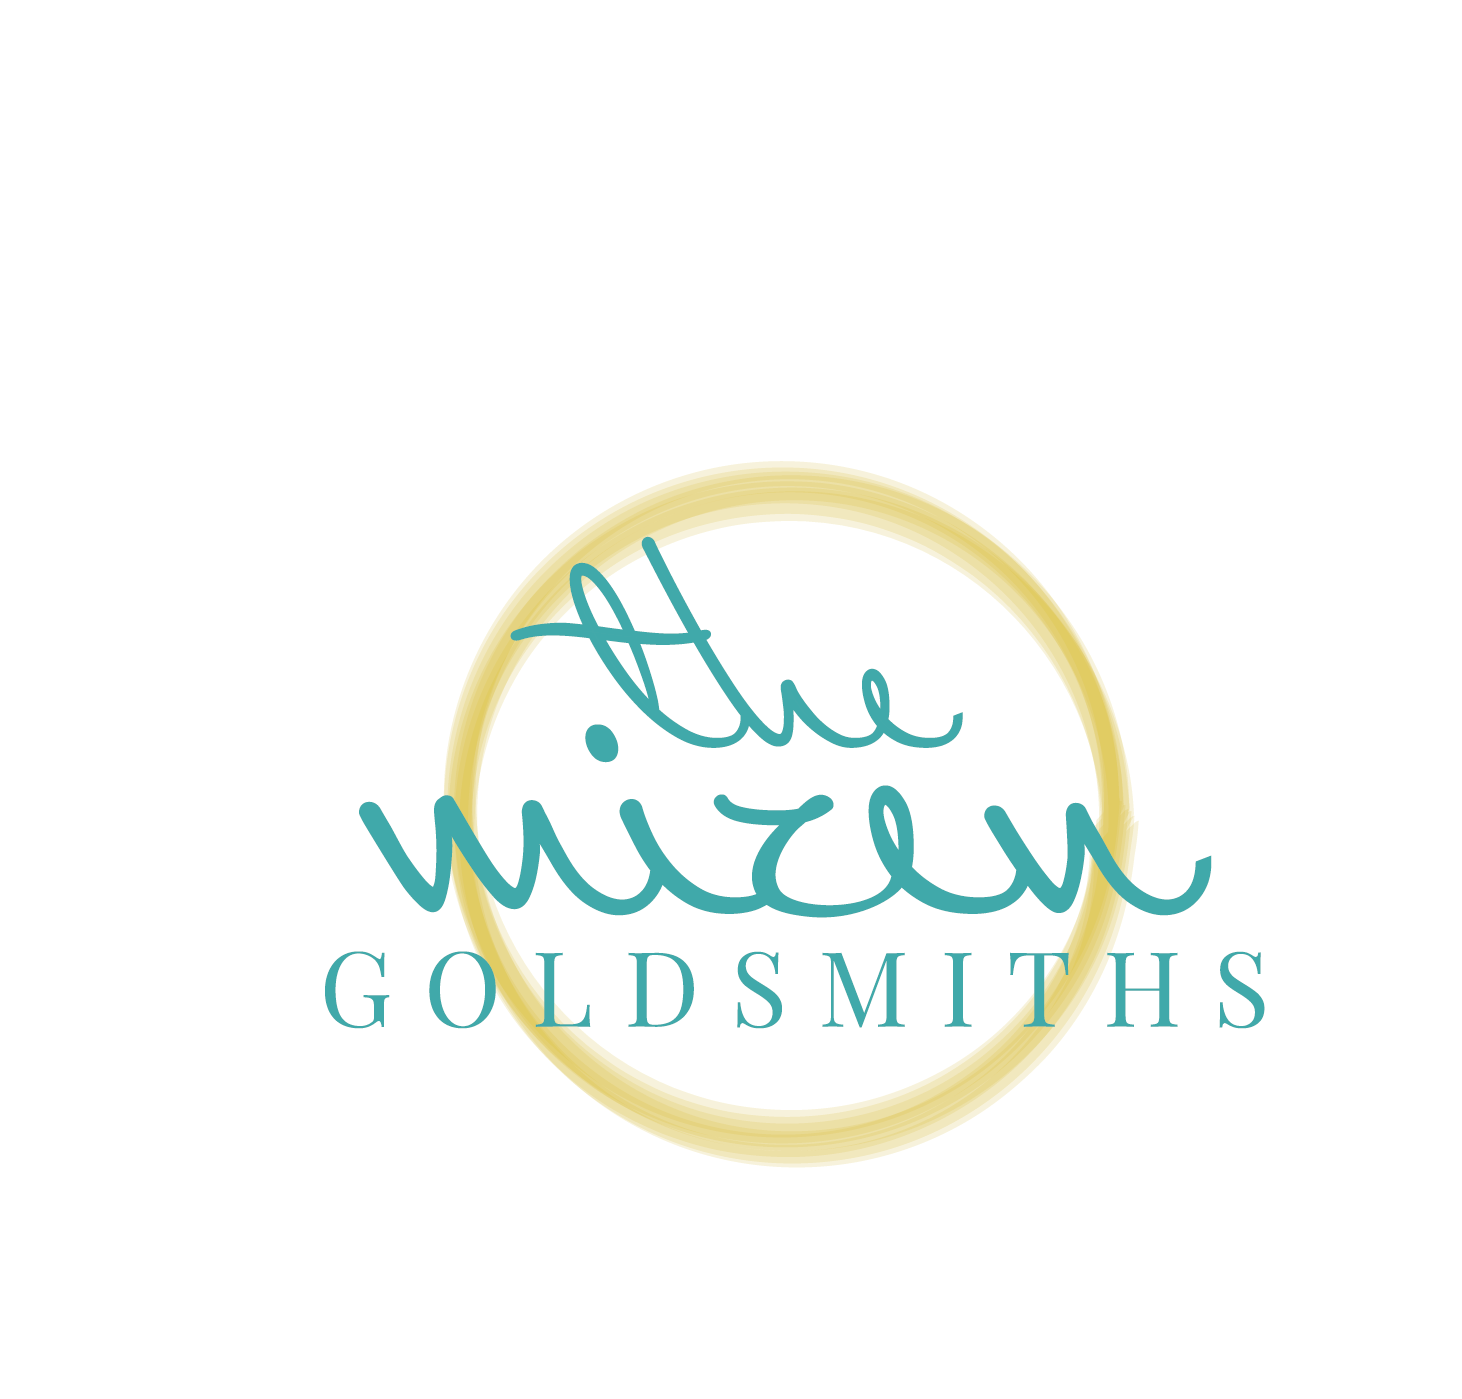 The Mizen Goldsmiths